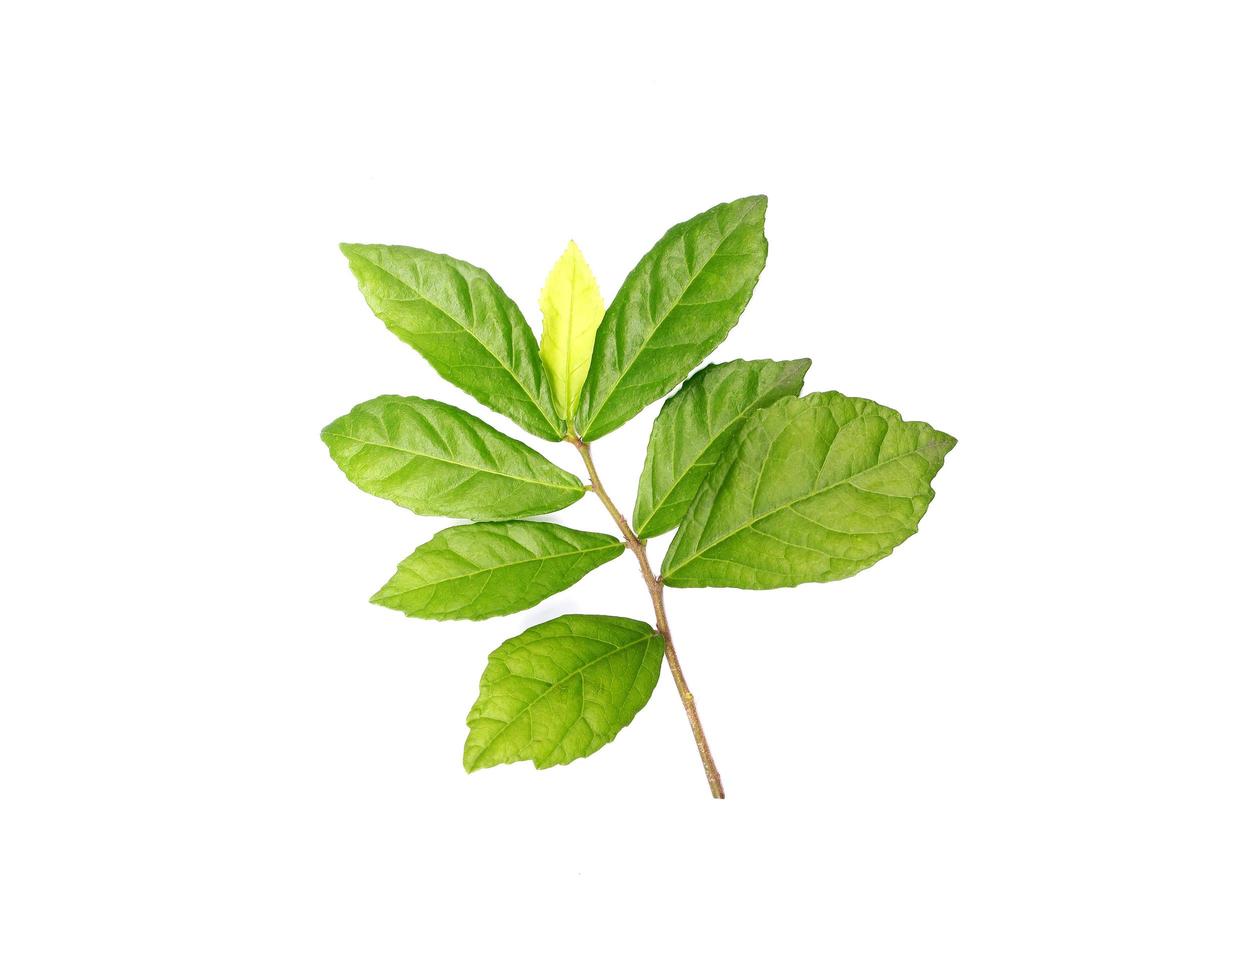 Green leaf stem with yellow leaf photo